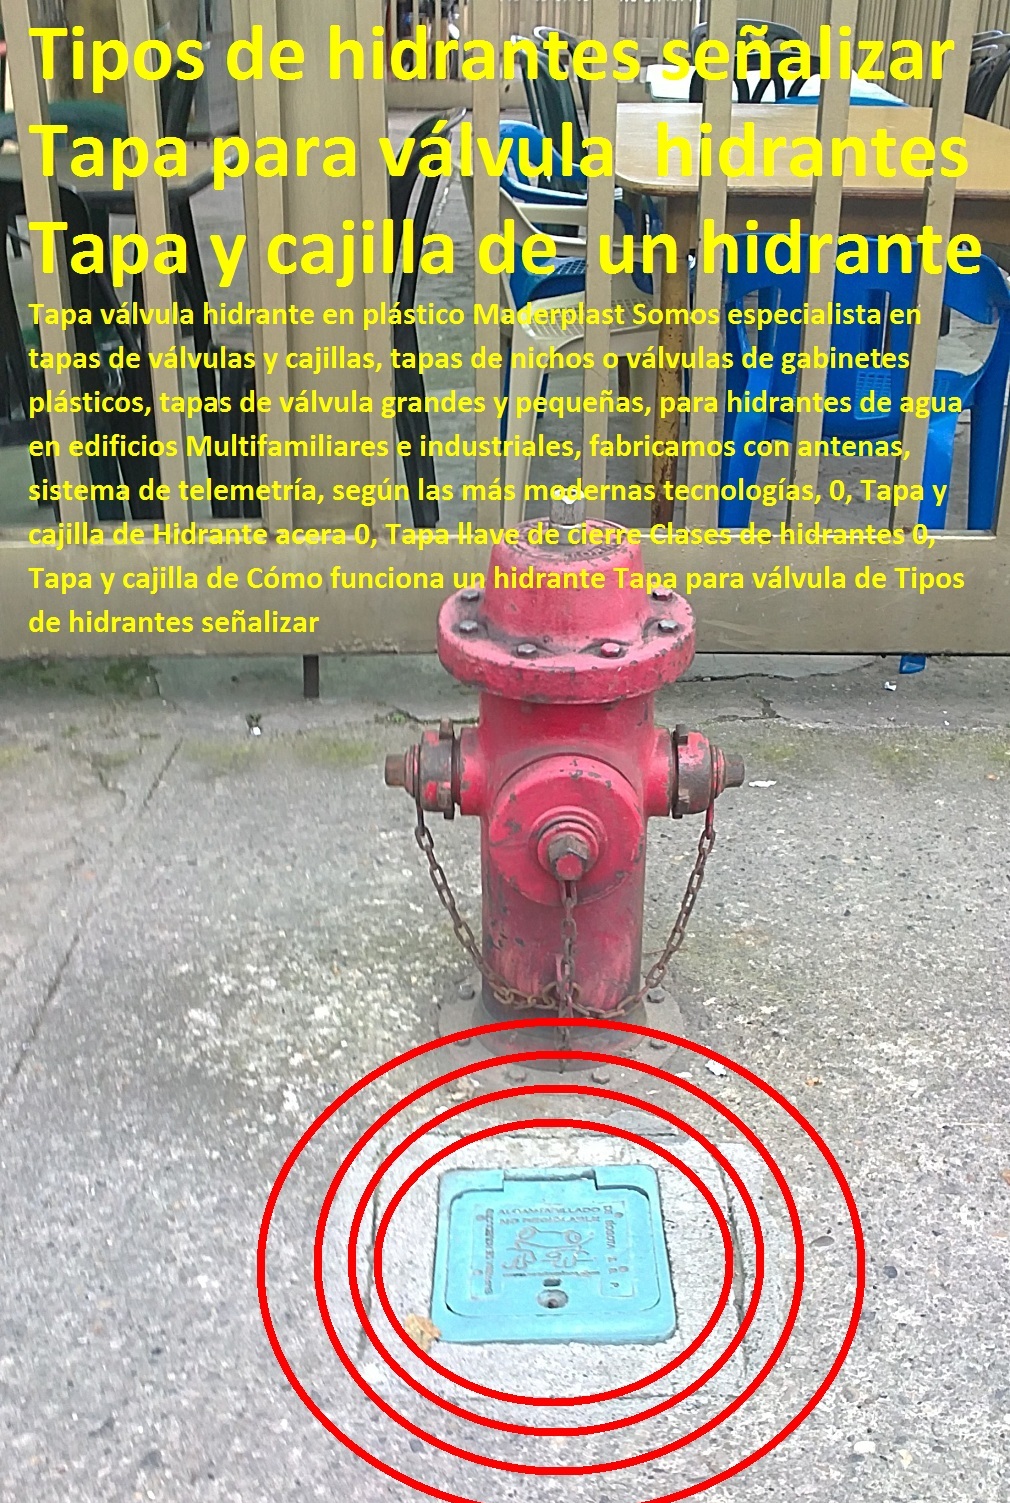 Tapa válvula hidrante en plástico 0, Tapa y cajilla de Hidrante acera 0, Tapa llave de cierre Clases de hidrantes 0, Tapa y cajilla de Cómo funciona un hidrante Tapa para válvula de Tipos de hidrantes señalizar 0 Tapa válvula hidrante en plástico 0, Tapa y cajilla de Hidrante acera 0, Tapa llave de cierre Clases de hidrantes 0, Tapa y cajilla de Cómo funciona un hidrante Tapa para válvula de Tipos de hidrantes señalizar 000 Tapa válvula hidrante en plástico 0, Tapa y cajilla de Hidrante acera 0, Tapa llave de cierre Clases de hidrantes 0, Tapa y cajilla de Cómo funciona un hidrante Tapa para válvula de Tipos de hidrantes señalizar